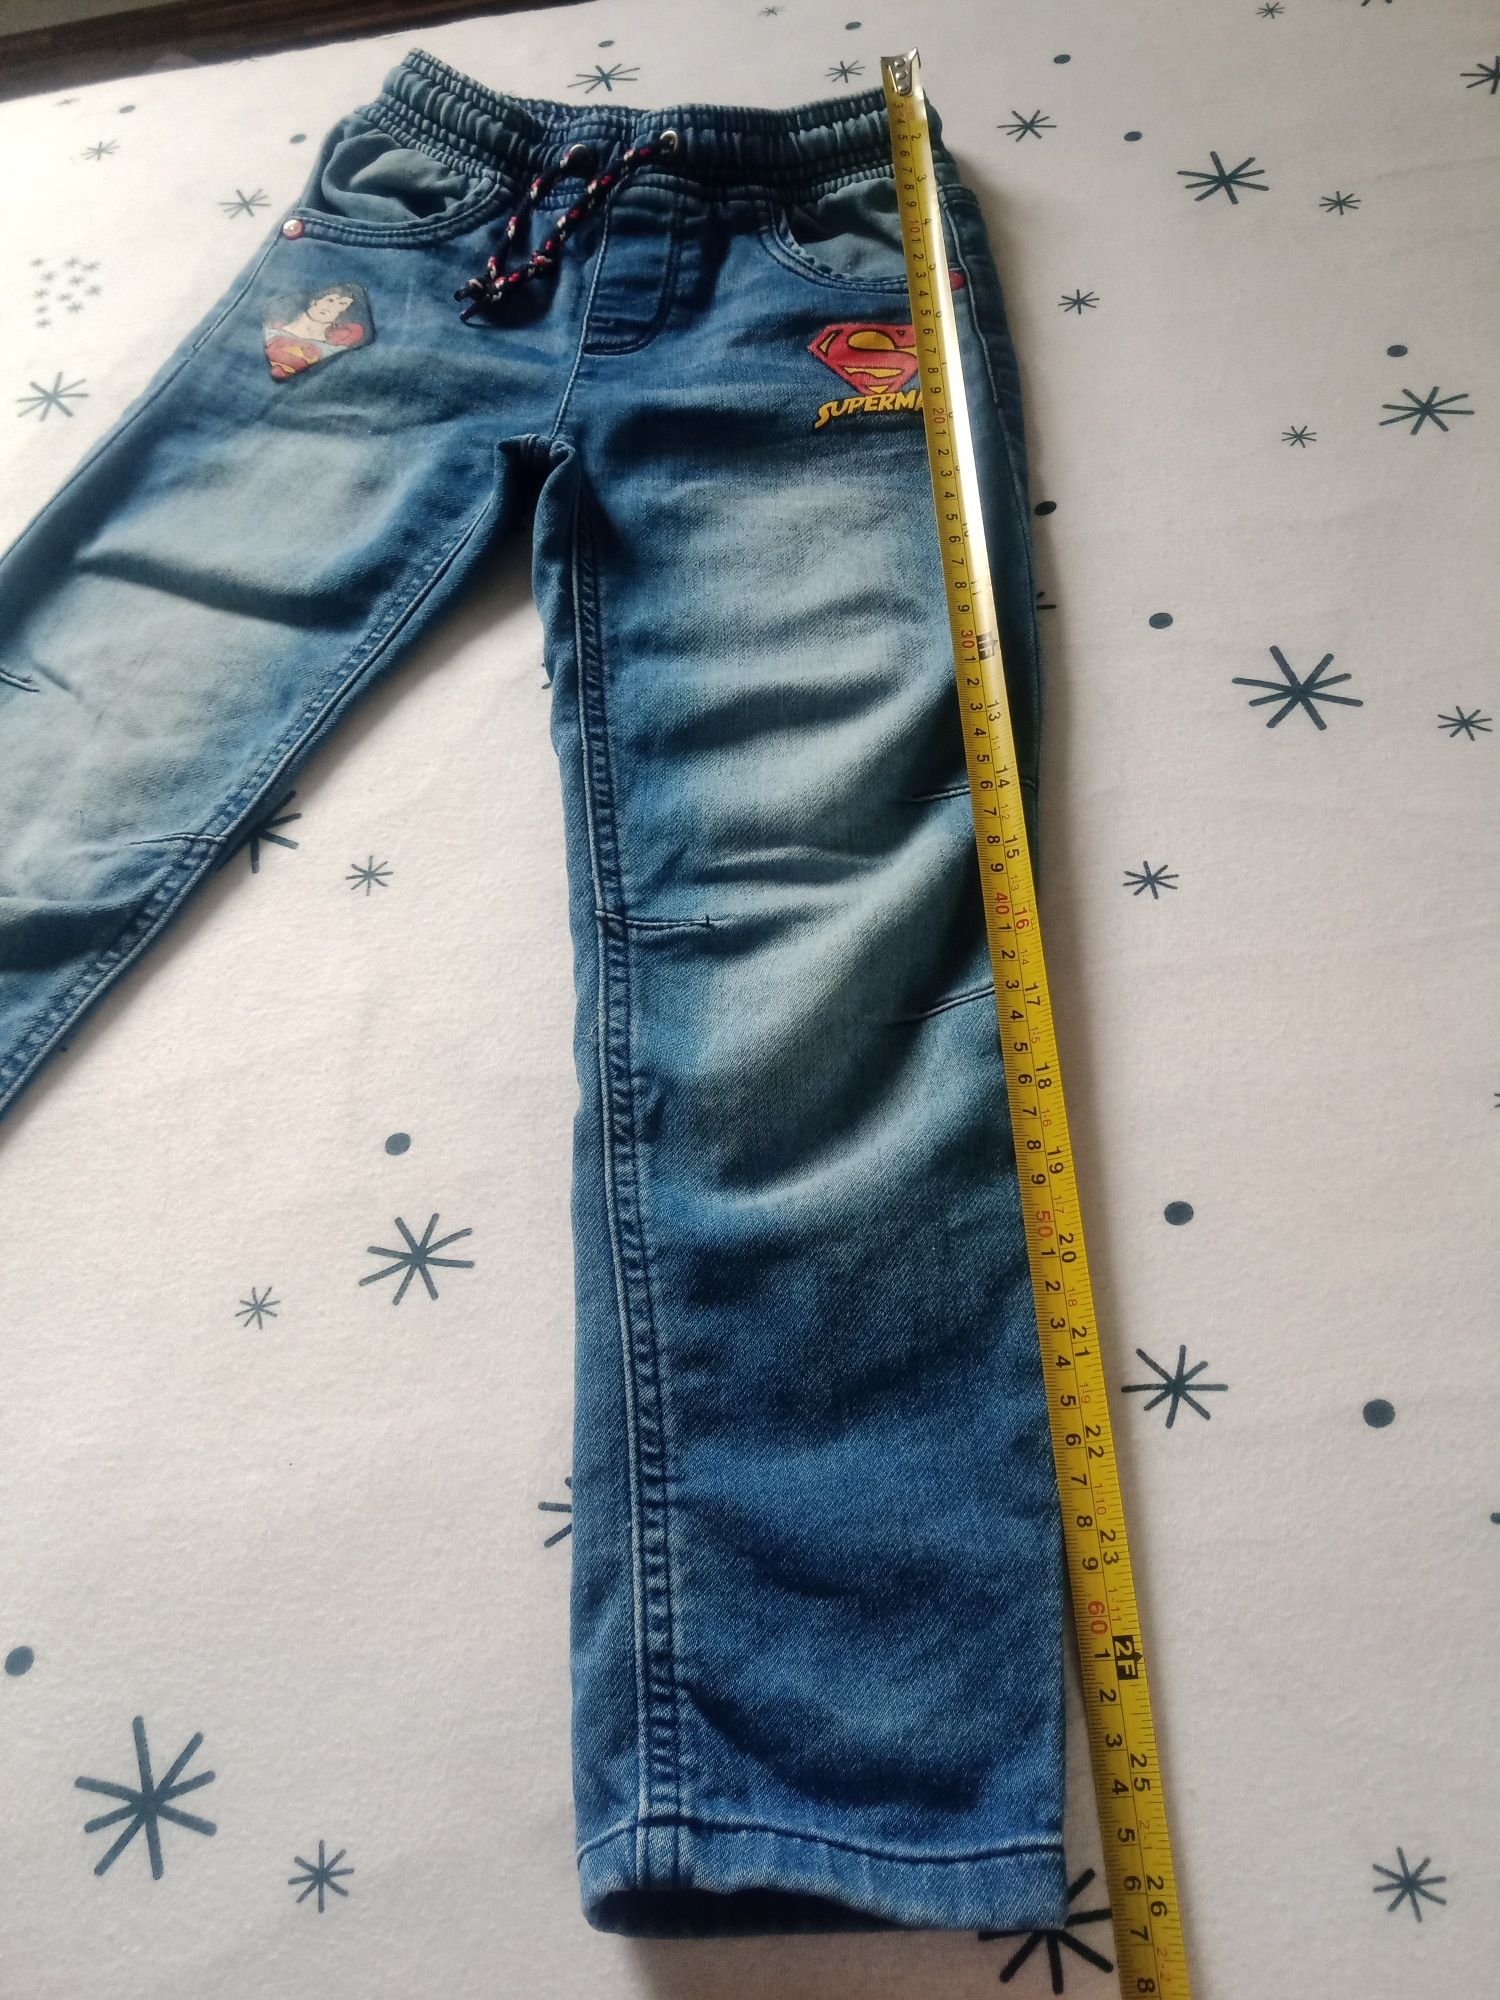 Spodnie jeans Spiderman 116